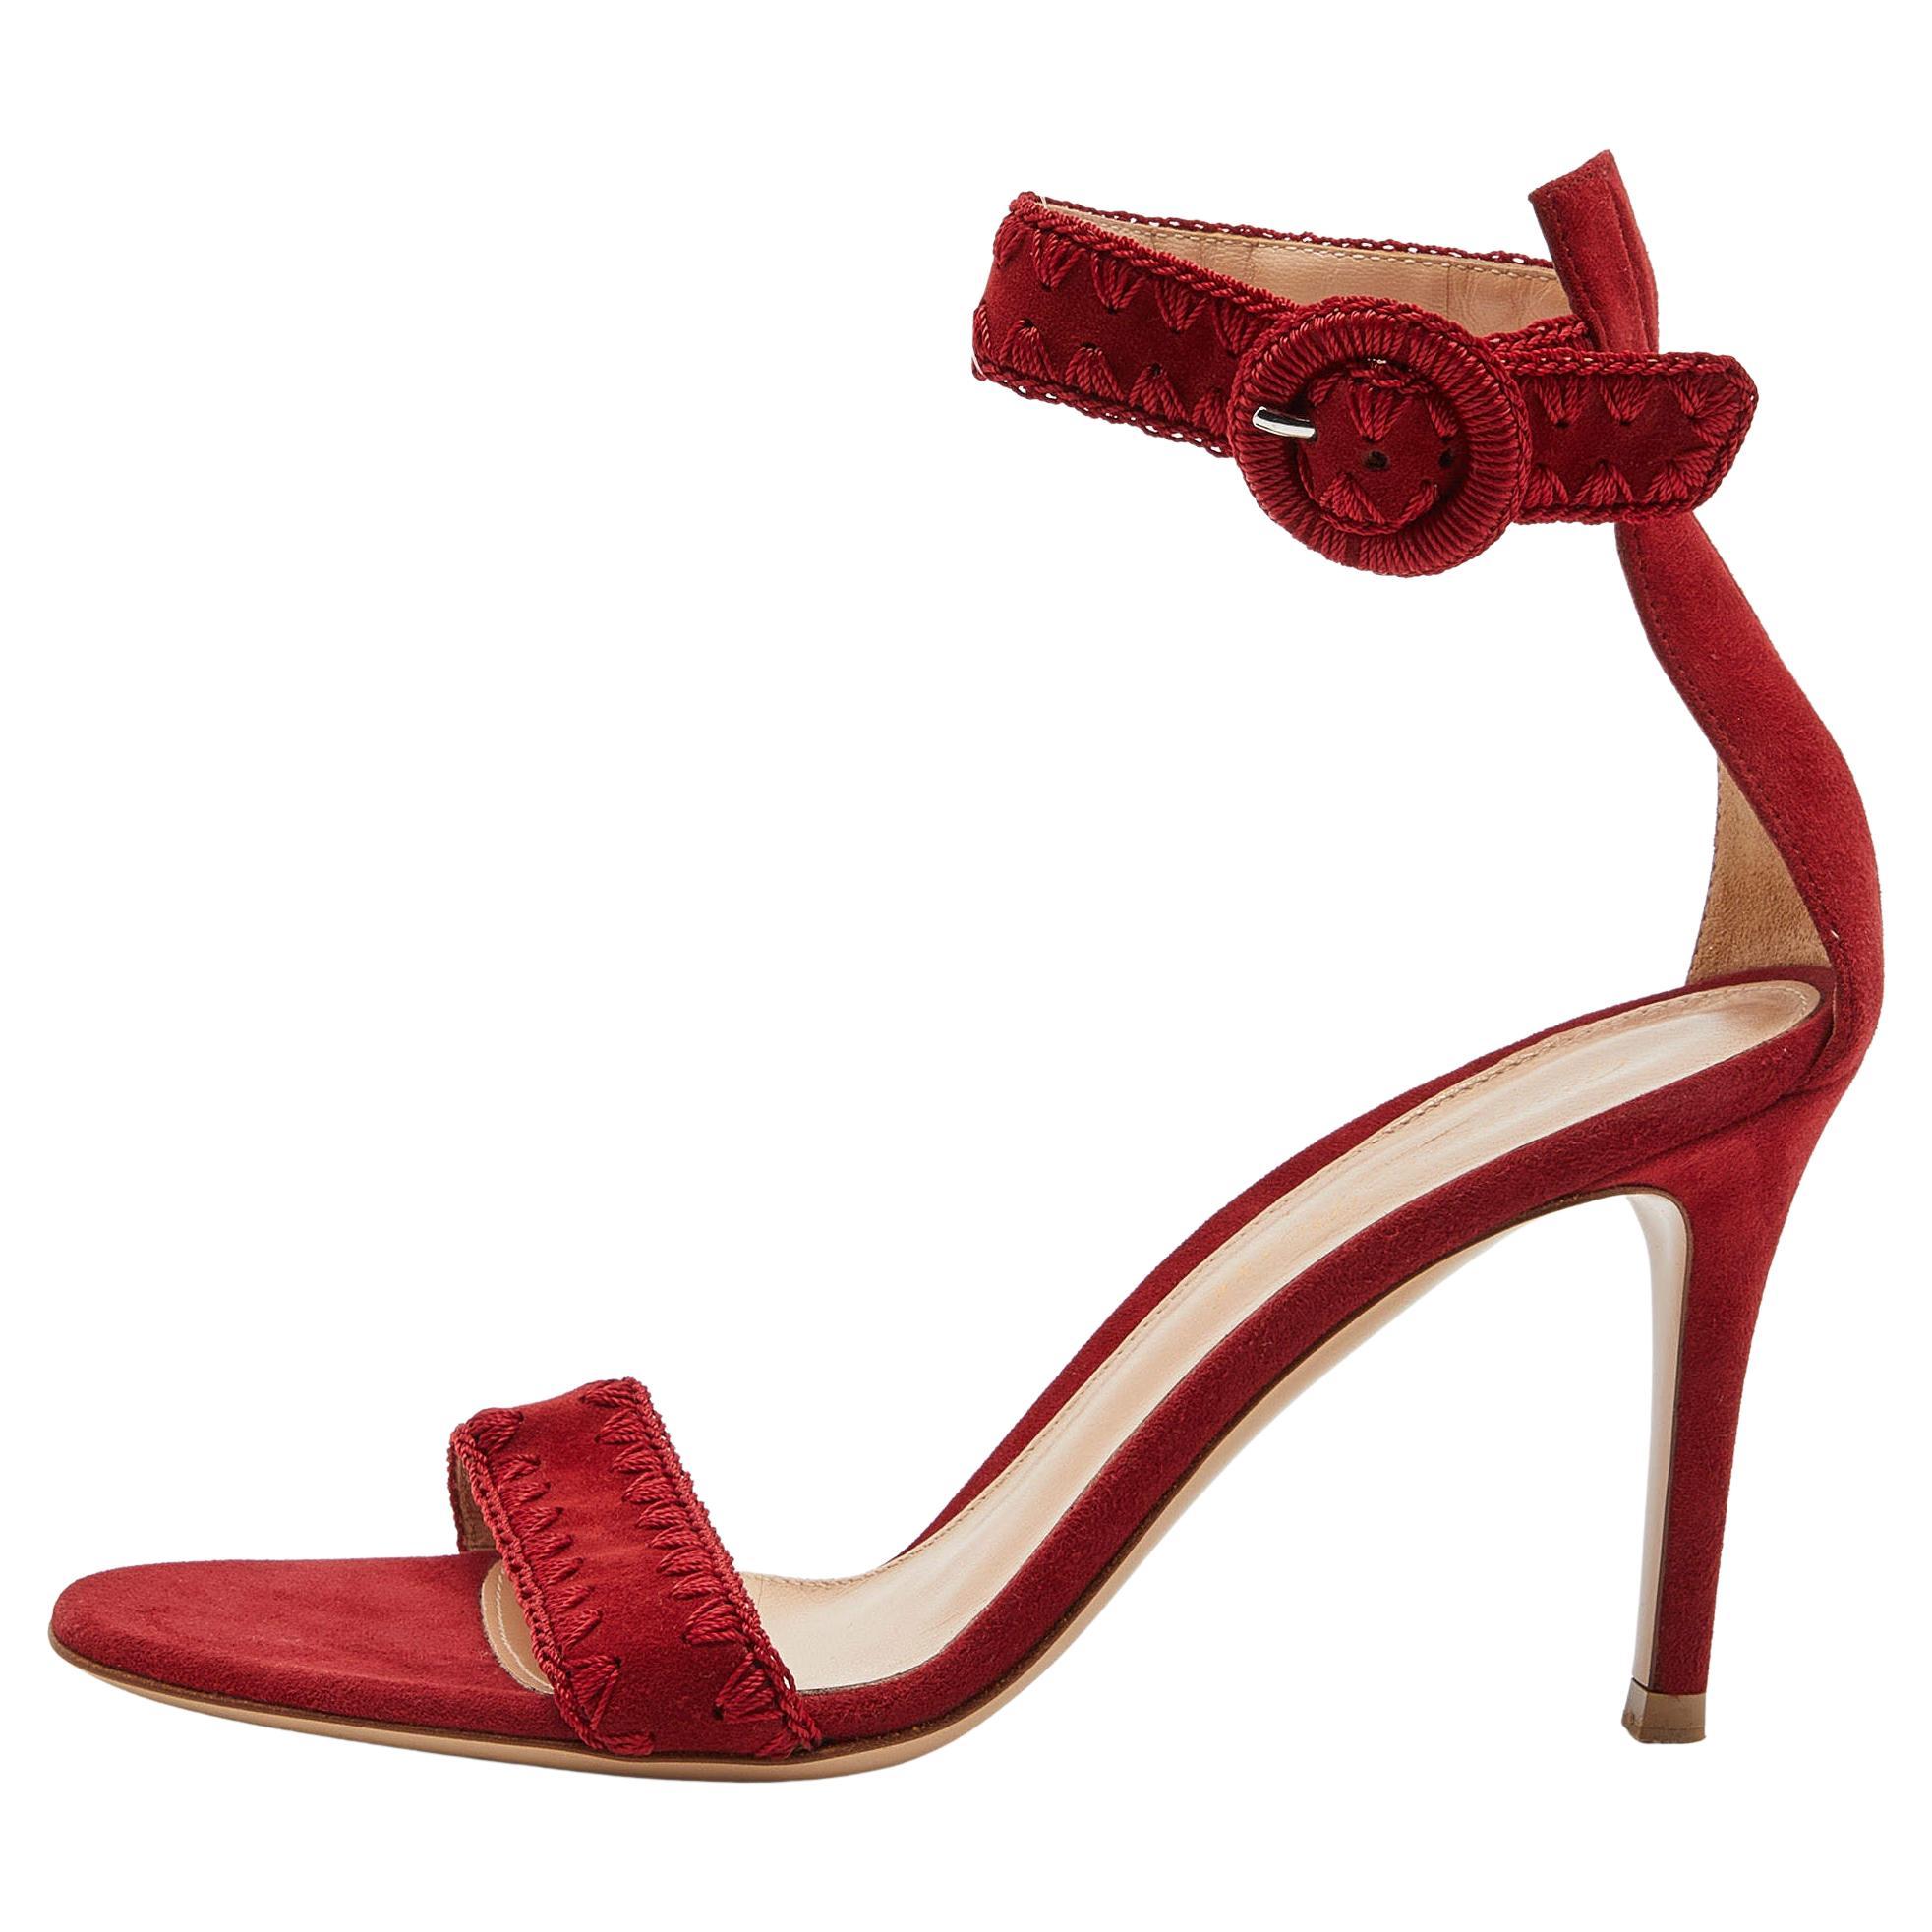 Gianvito Rossi Red/Beige Suede Whipstitch Portofino Sandals Size 36